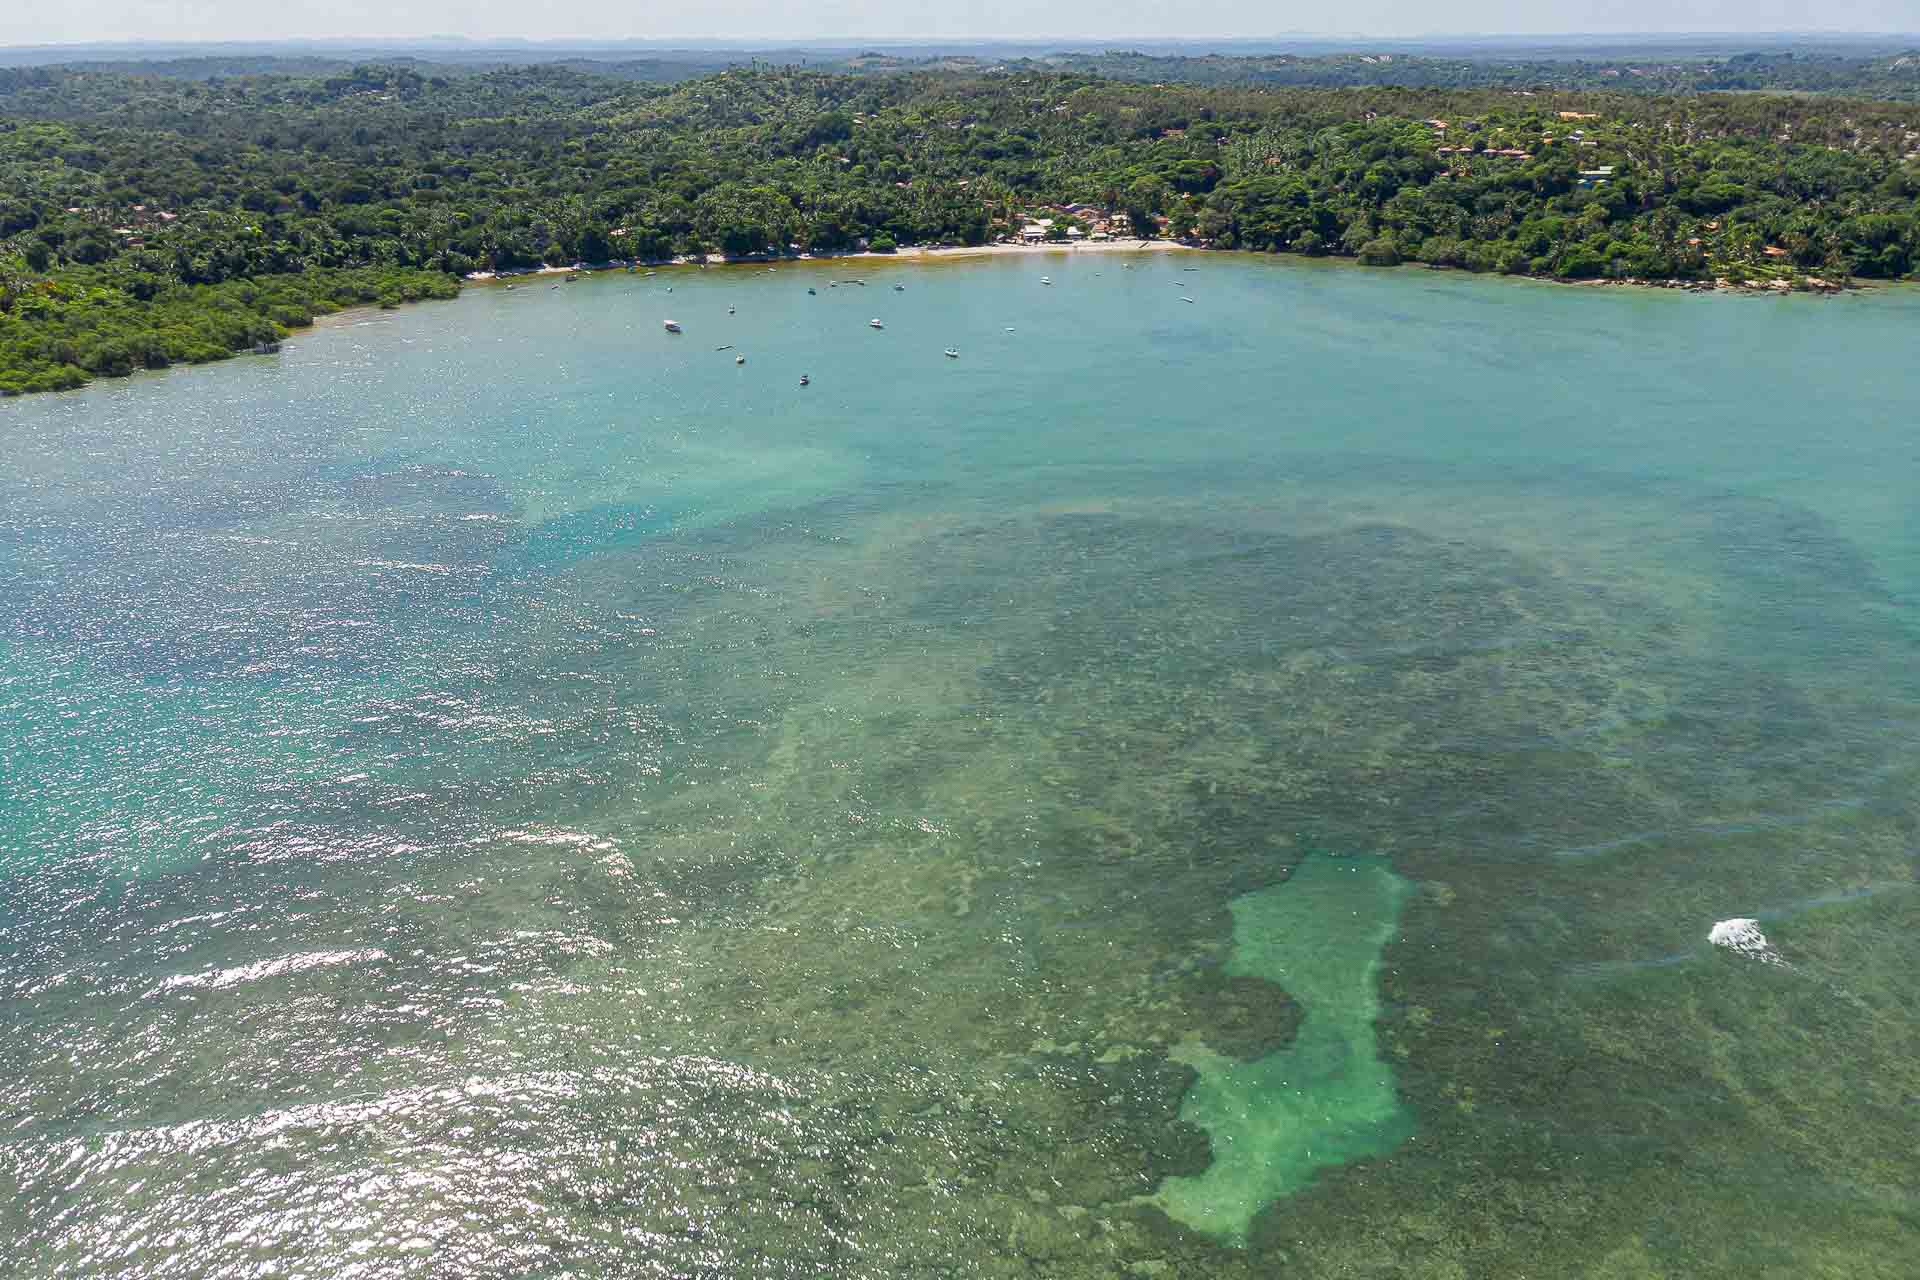 Vista aerea da praia de Morere com os corais formando piscinas naturais